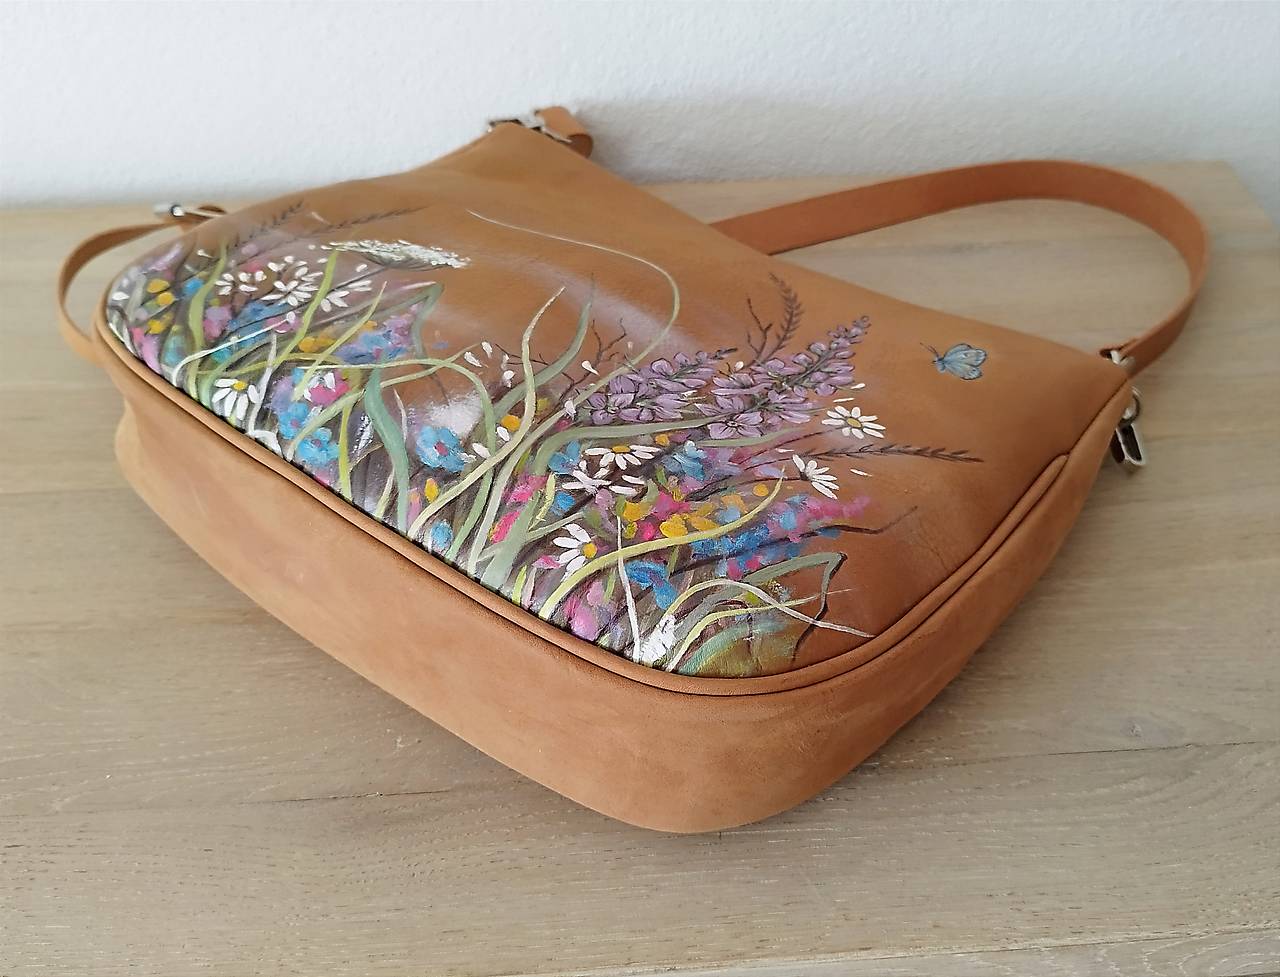 PAULA "Meadow2" kožená kabelka s vypaľovaným obrázkom